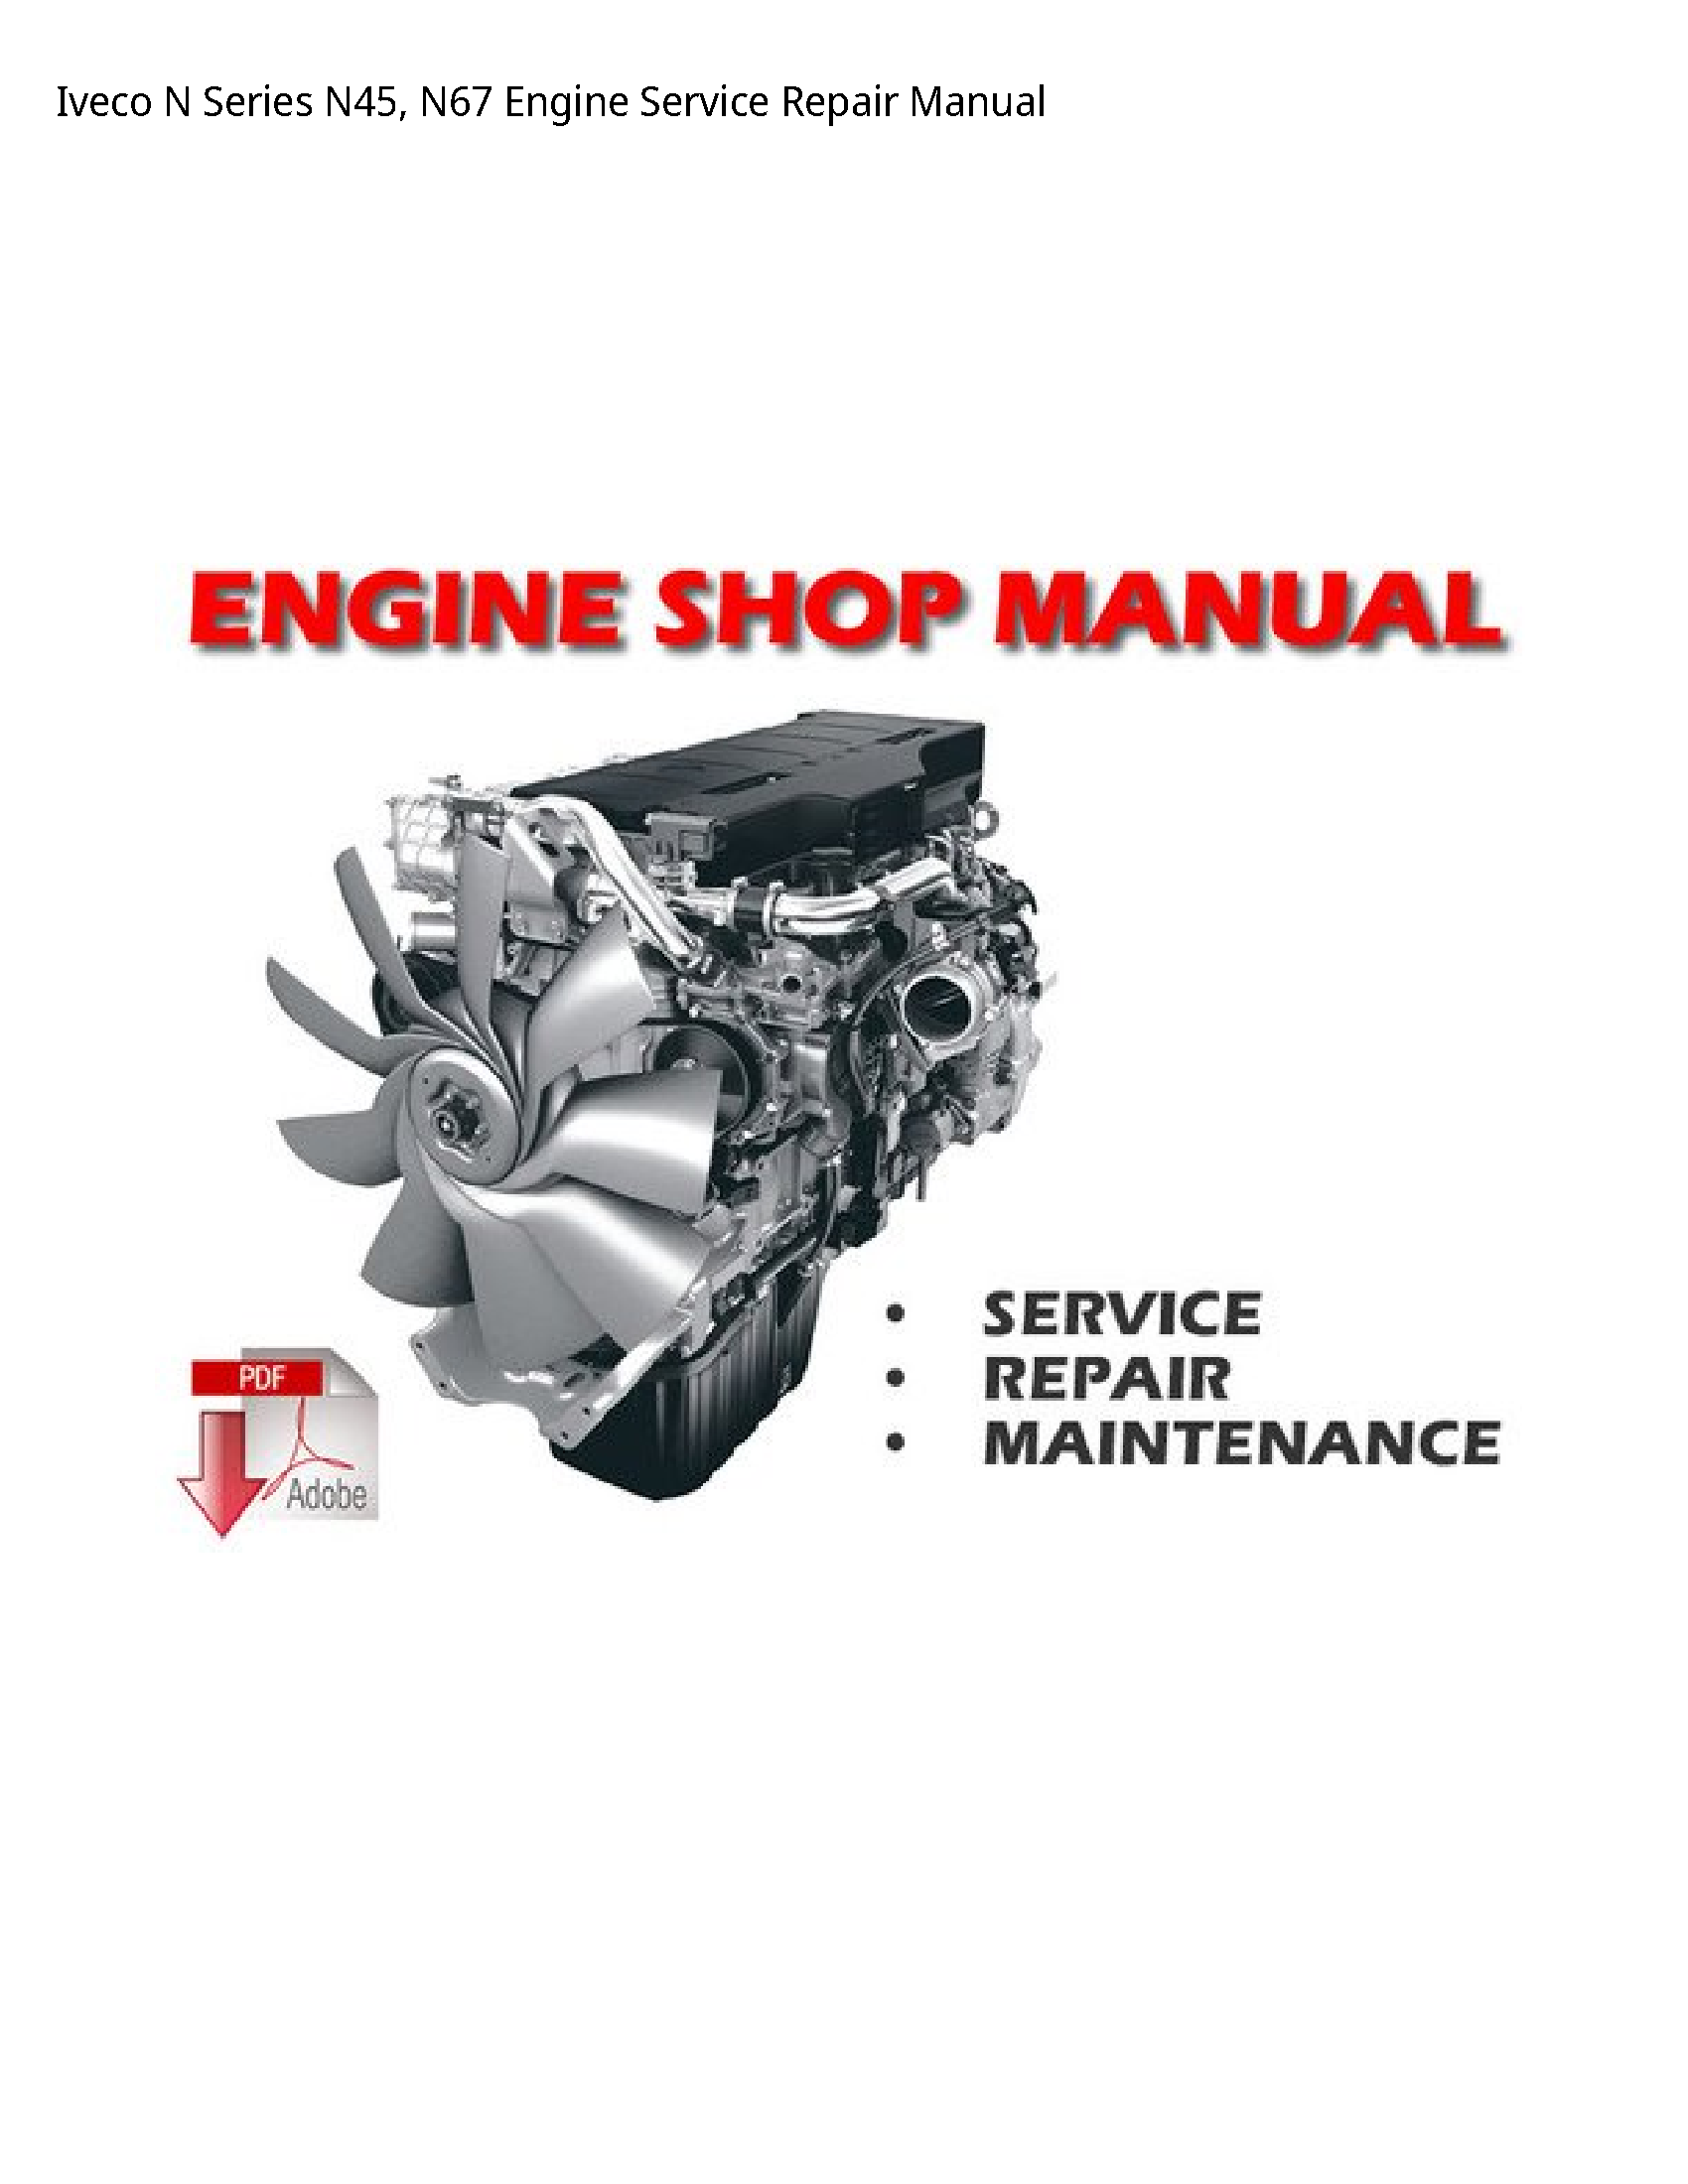 Iveco N45 Series Engine manual